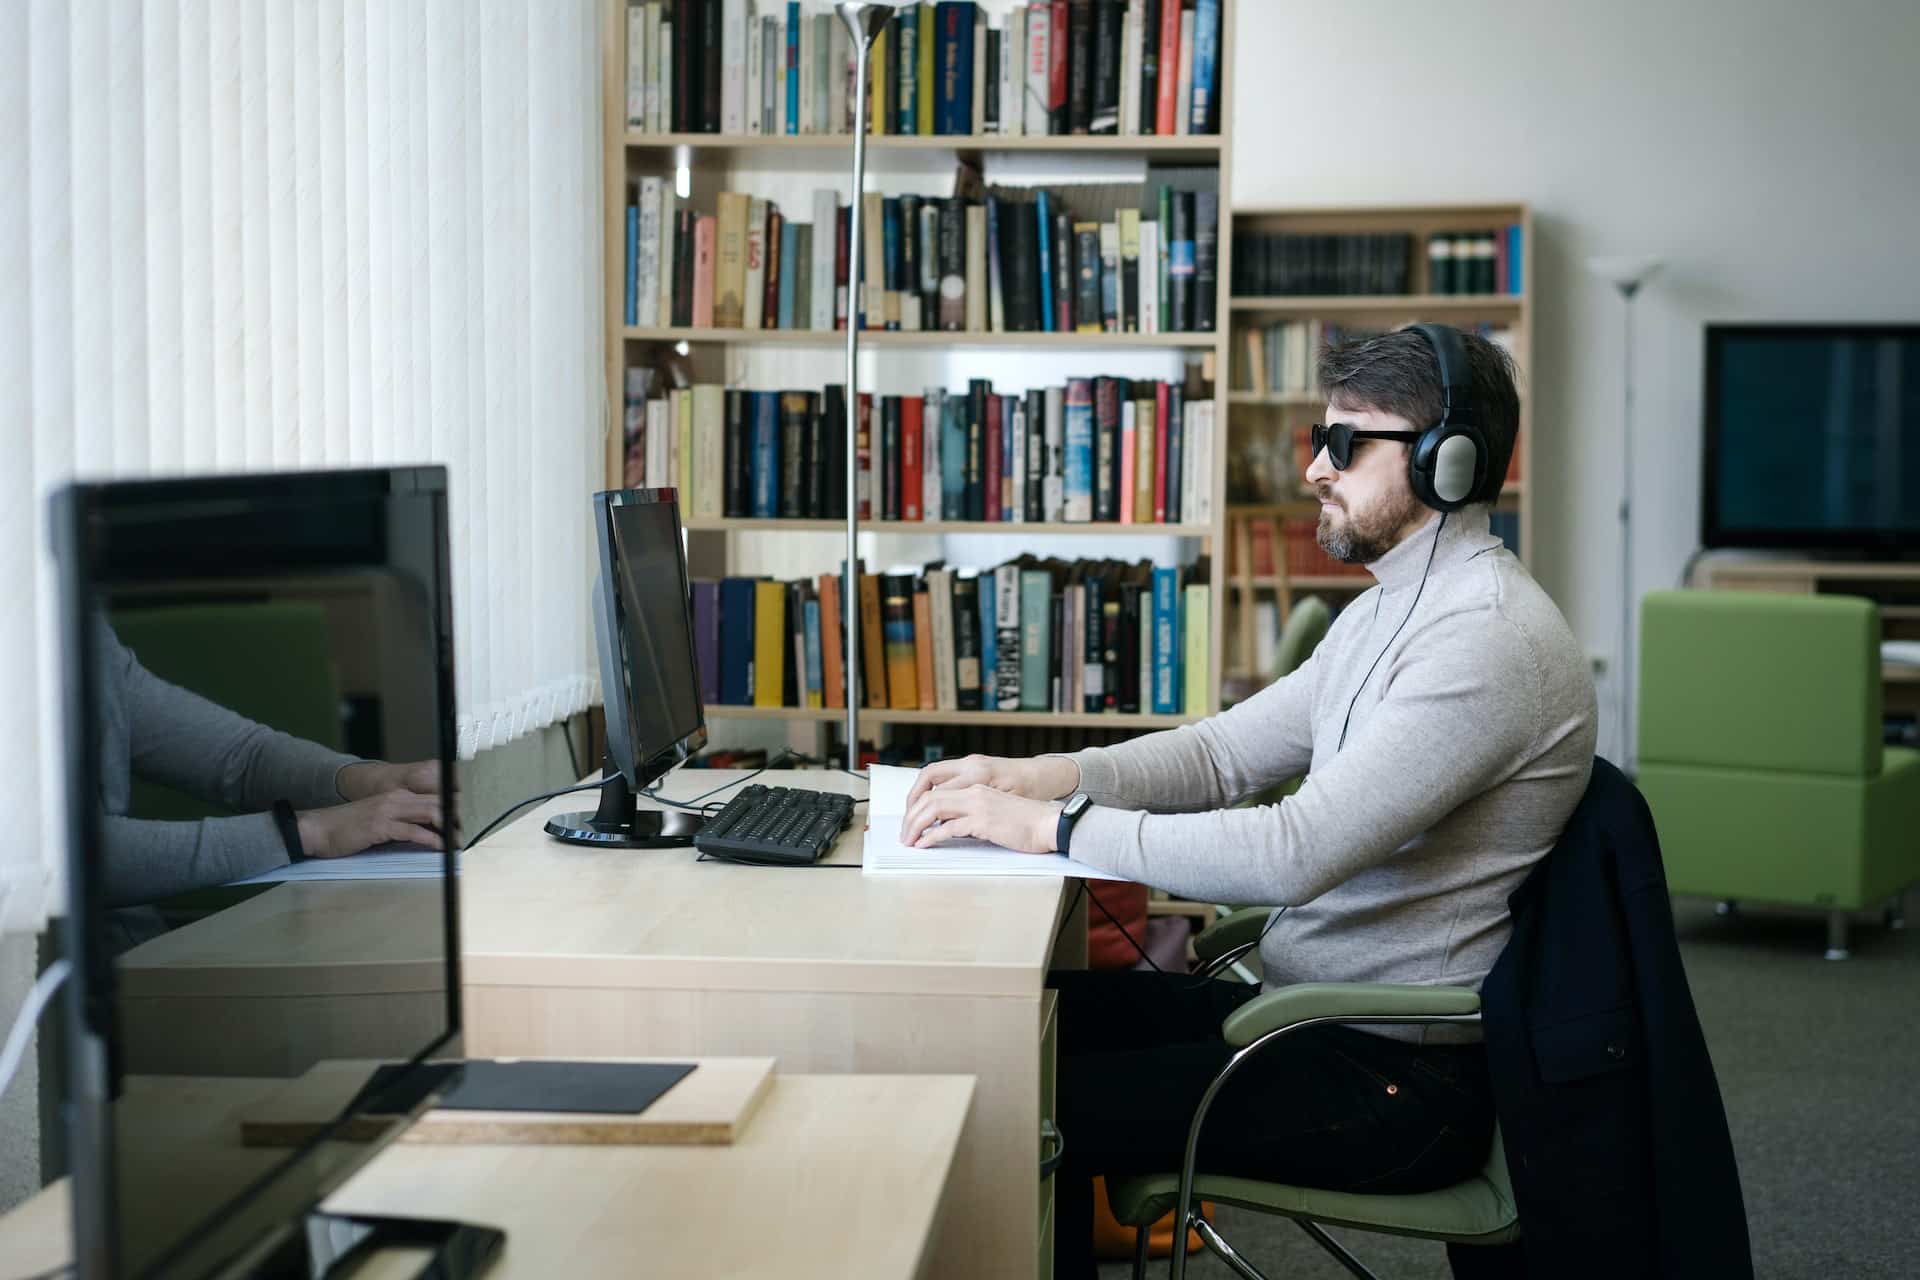 Een blinde man met een zonnebril en koptelefoon op zit achter een computer te lezen.